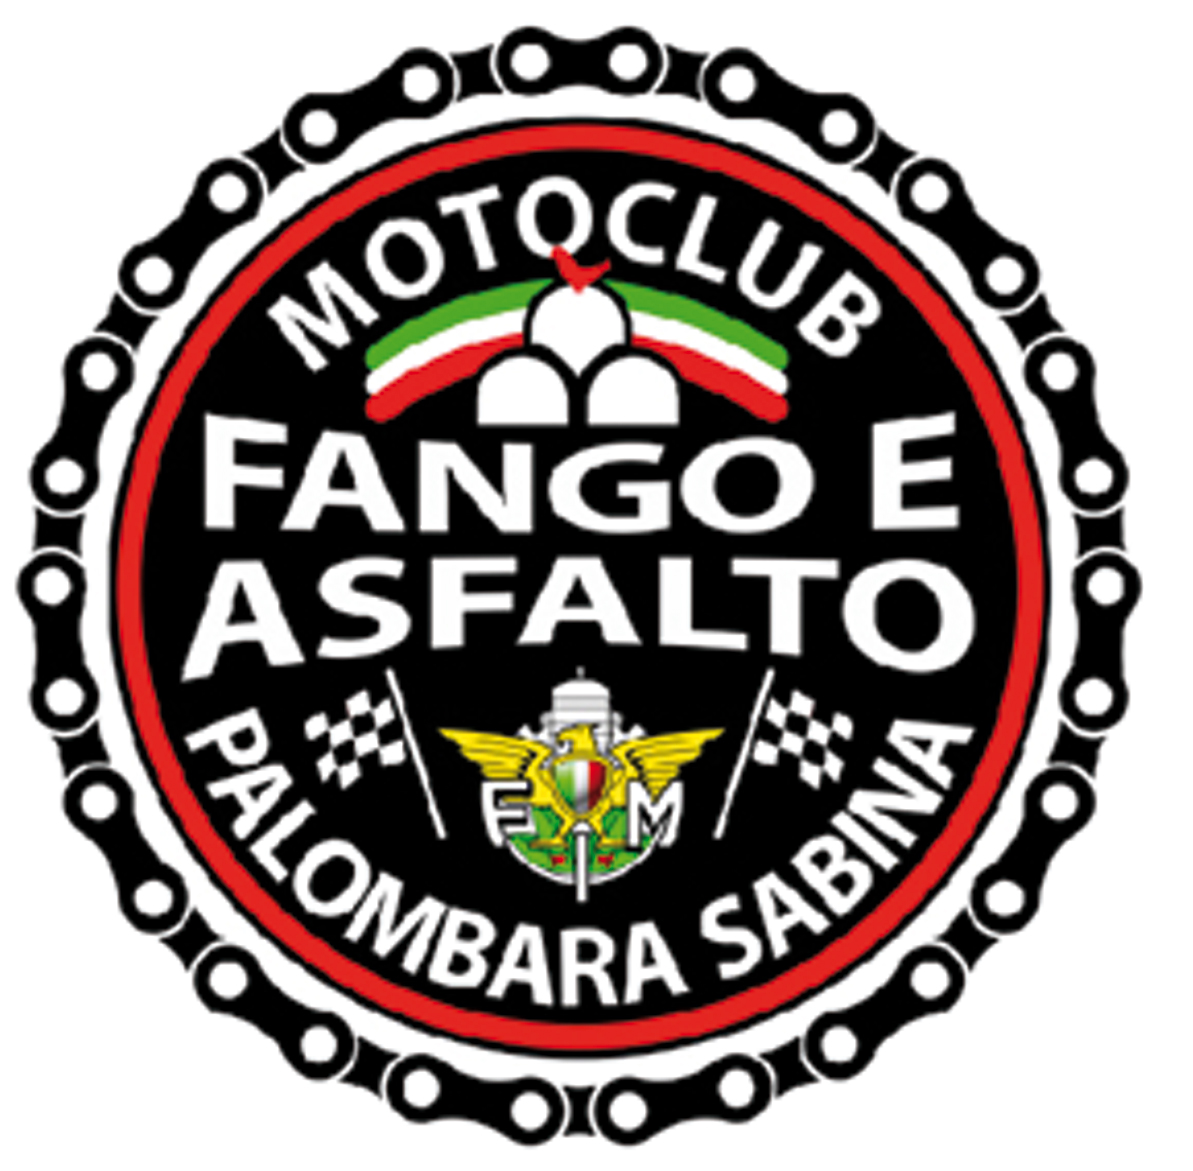 MOTOCLUB FANGO E ASFALTO